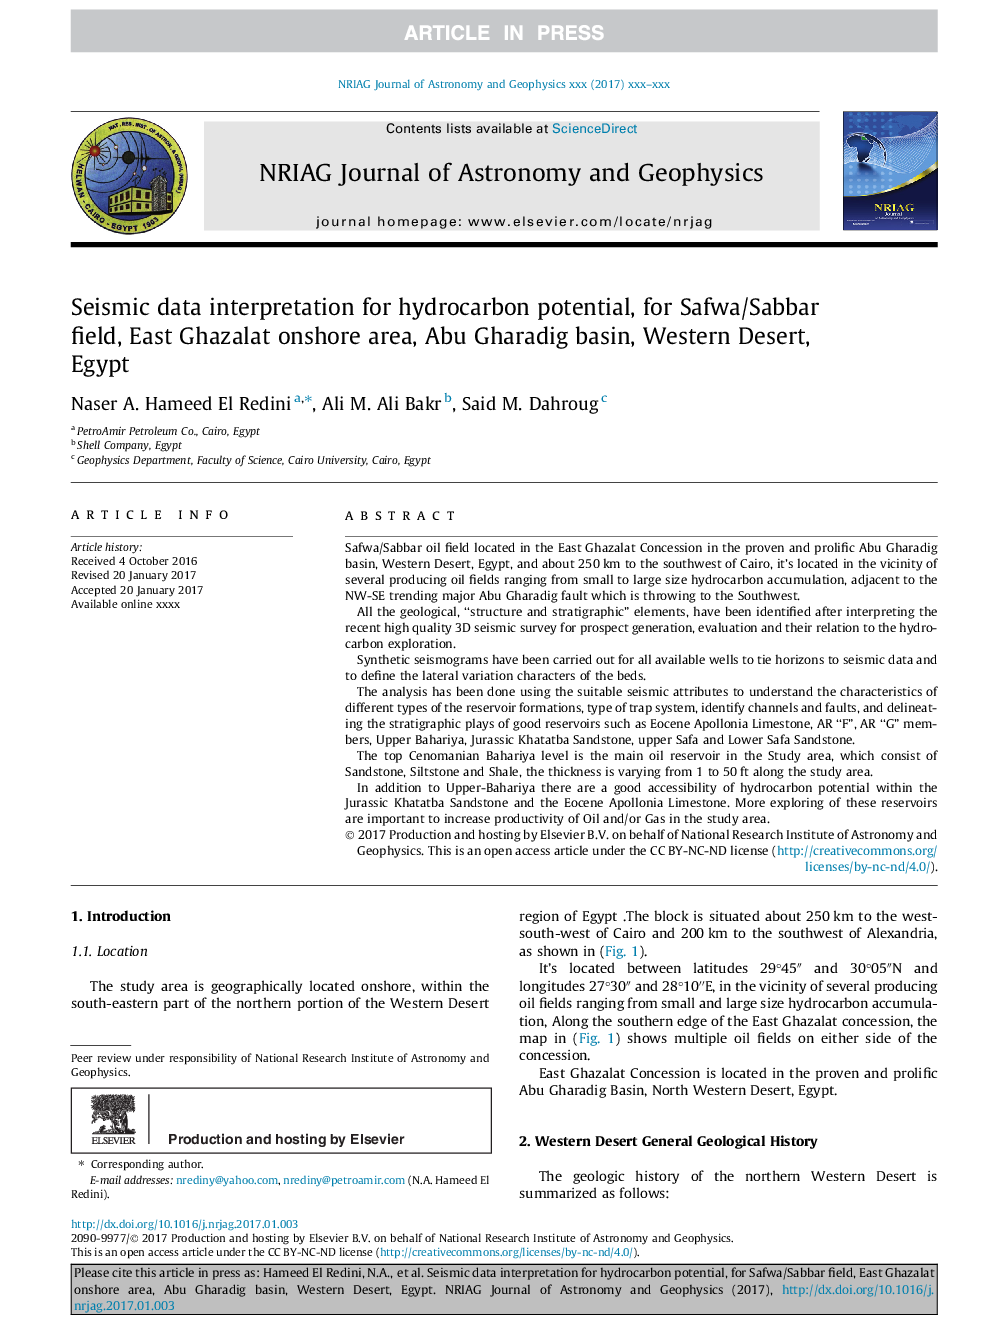 تفسیر داده های لرزه ای برای پتانسیل هیدروکربن ها برای میدان صفوی / سببار، ساحل غزال شرقی، حوضه ابوغرادیق، صحرای غربی، مصر 